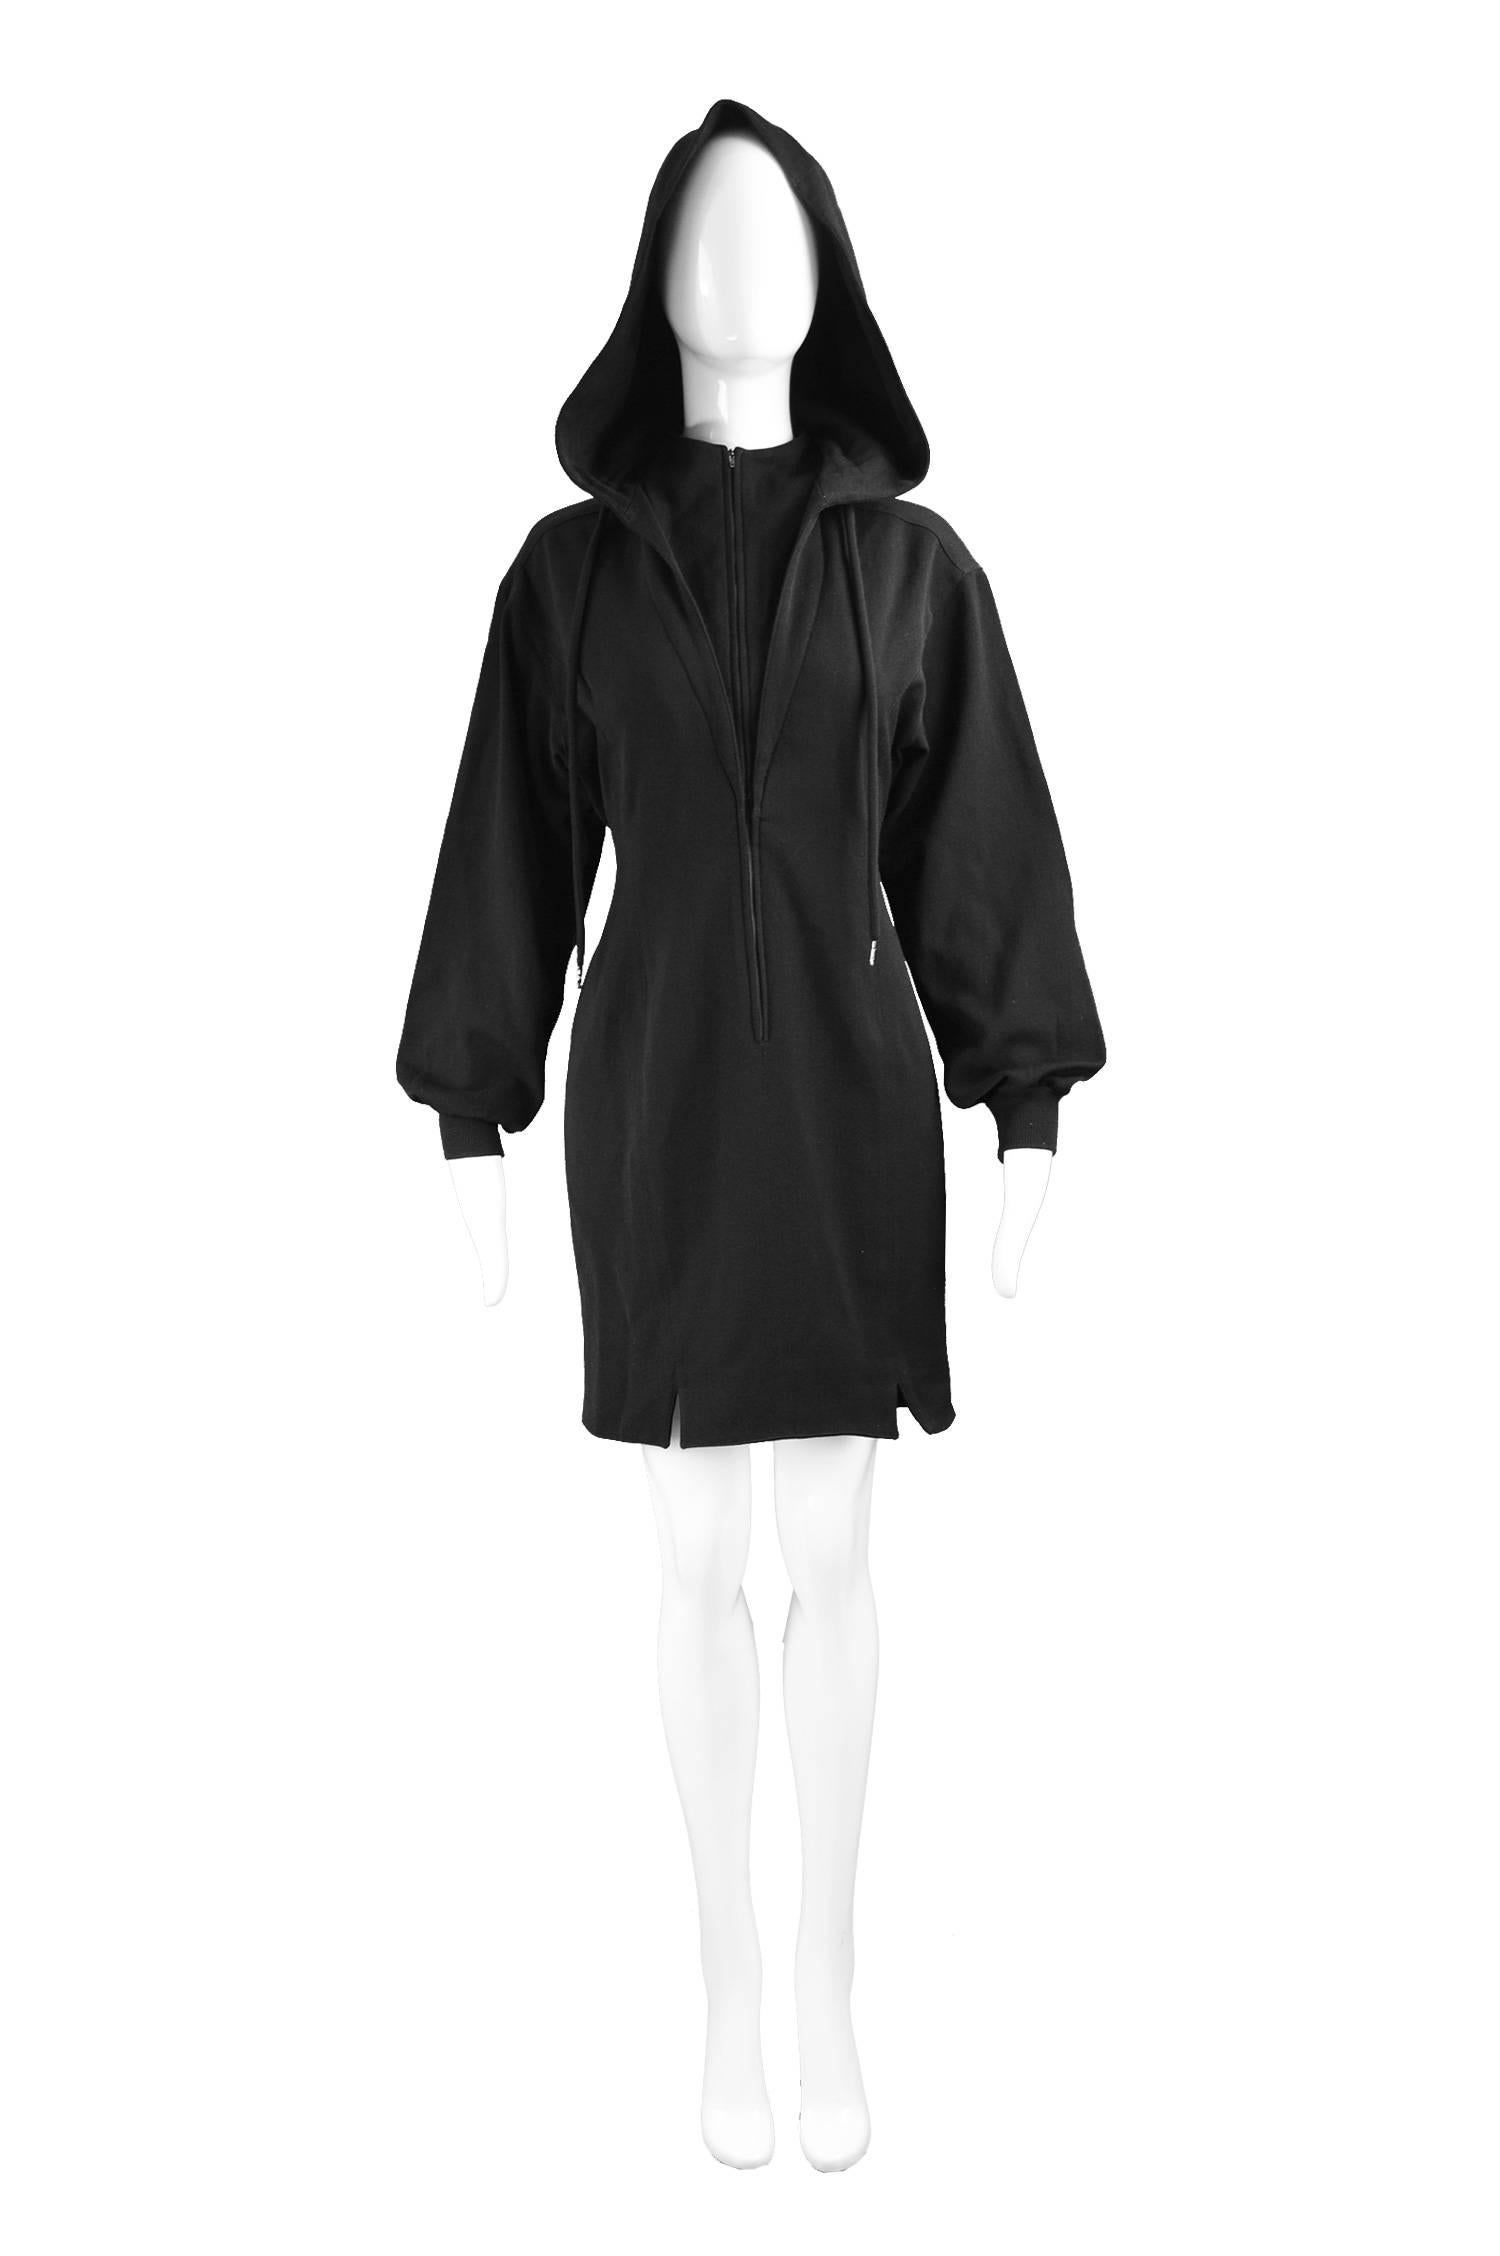 Claude Montana Vintage Black Hooded Wool Mini Dress, 1980s

Estimated Modern Size: UK 12/ US 8/ EU 40. Please check measurements. 
Bust - 36” / 91cm
Waist - 30” / 76cm
Hips - 38” / 96cm
Length (Shoulder to Hem) - 33” / 84cm
Shoulder to Shoulder -